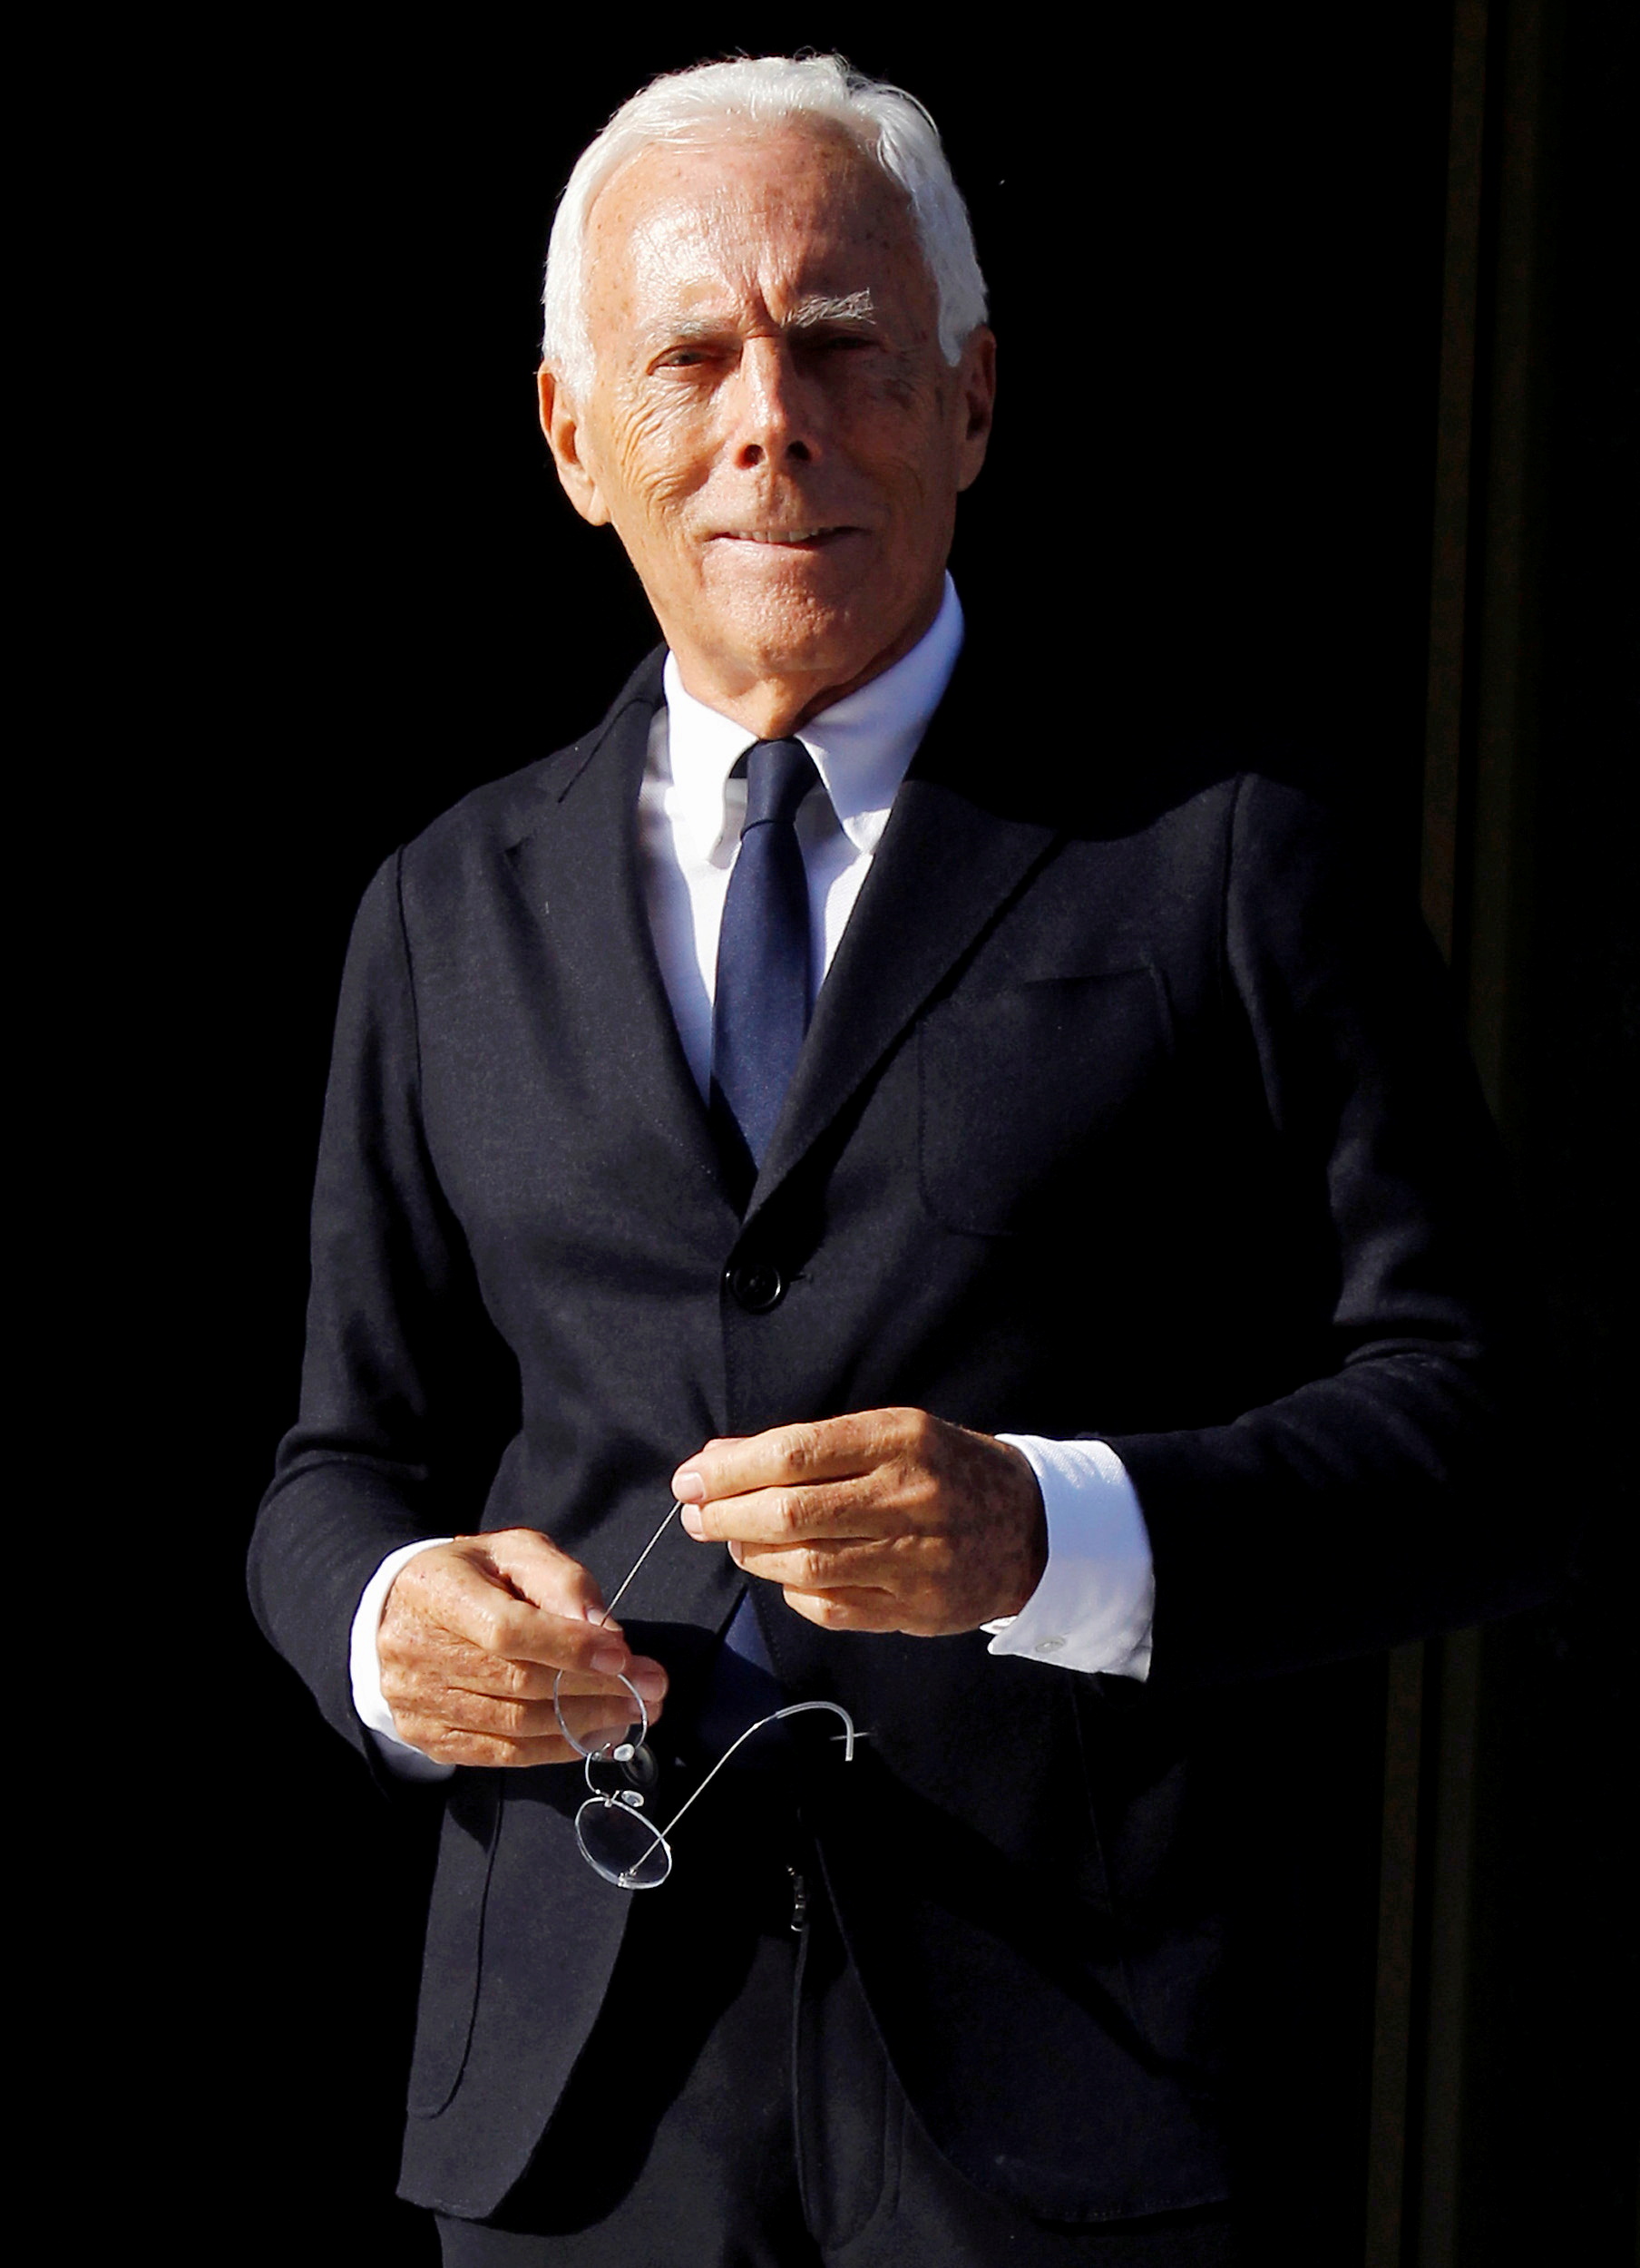 EXCLUSIVE Louis Vuitton-backed L Catterton explores public listing